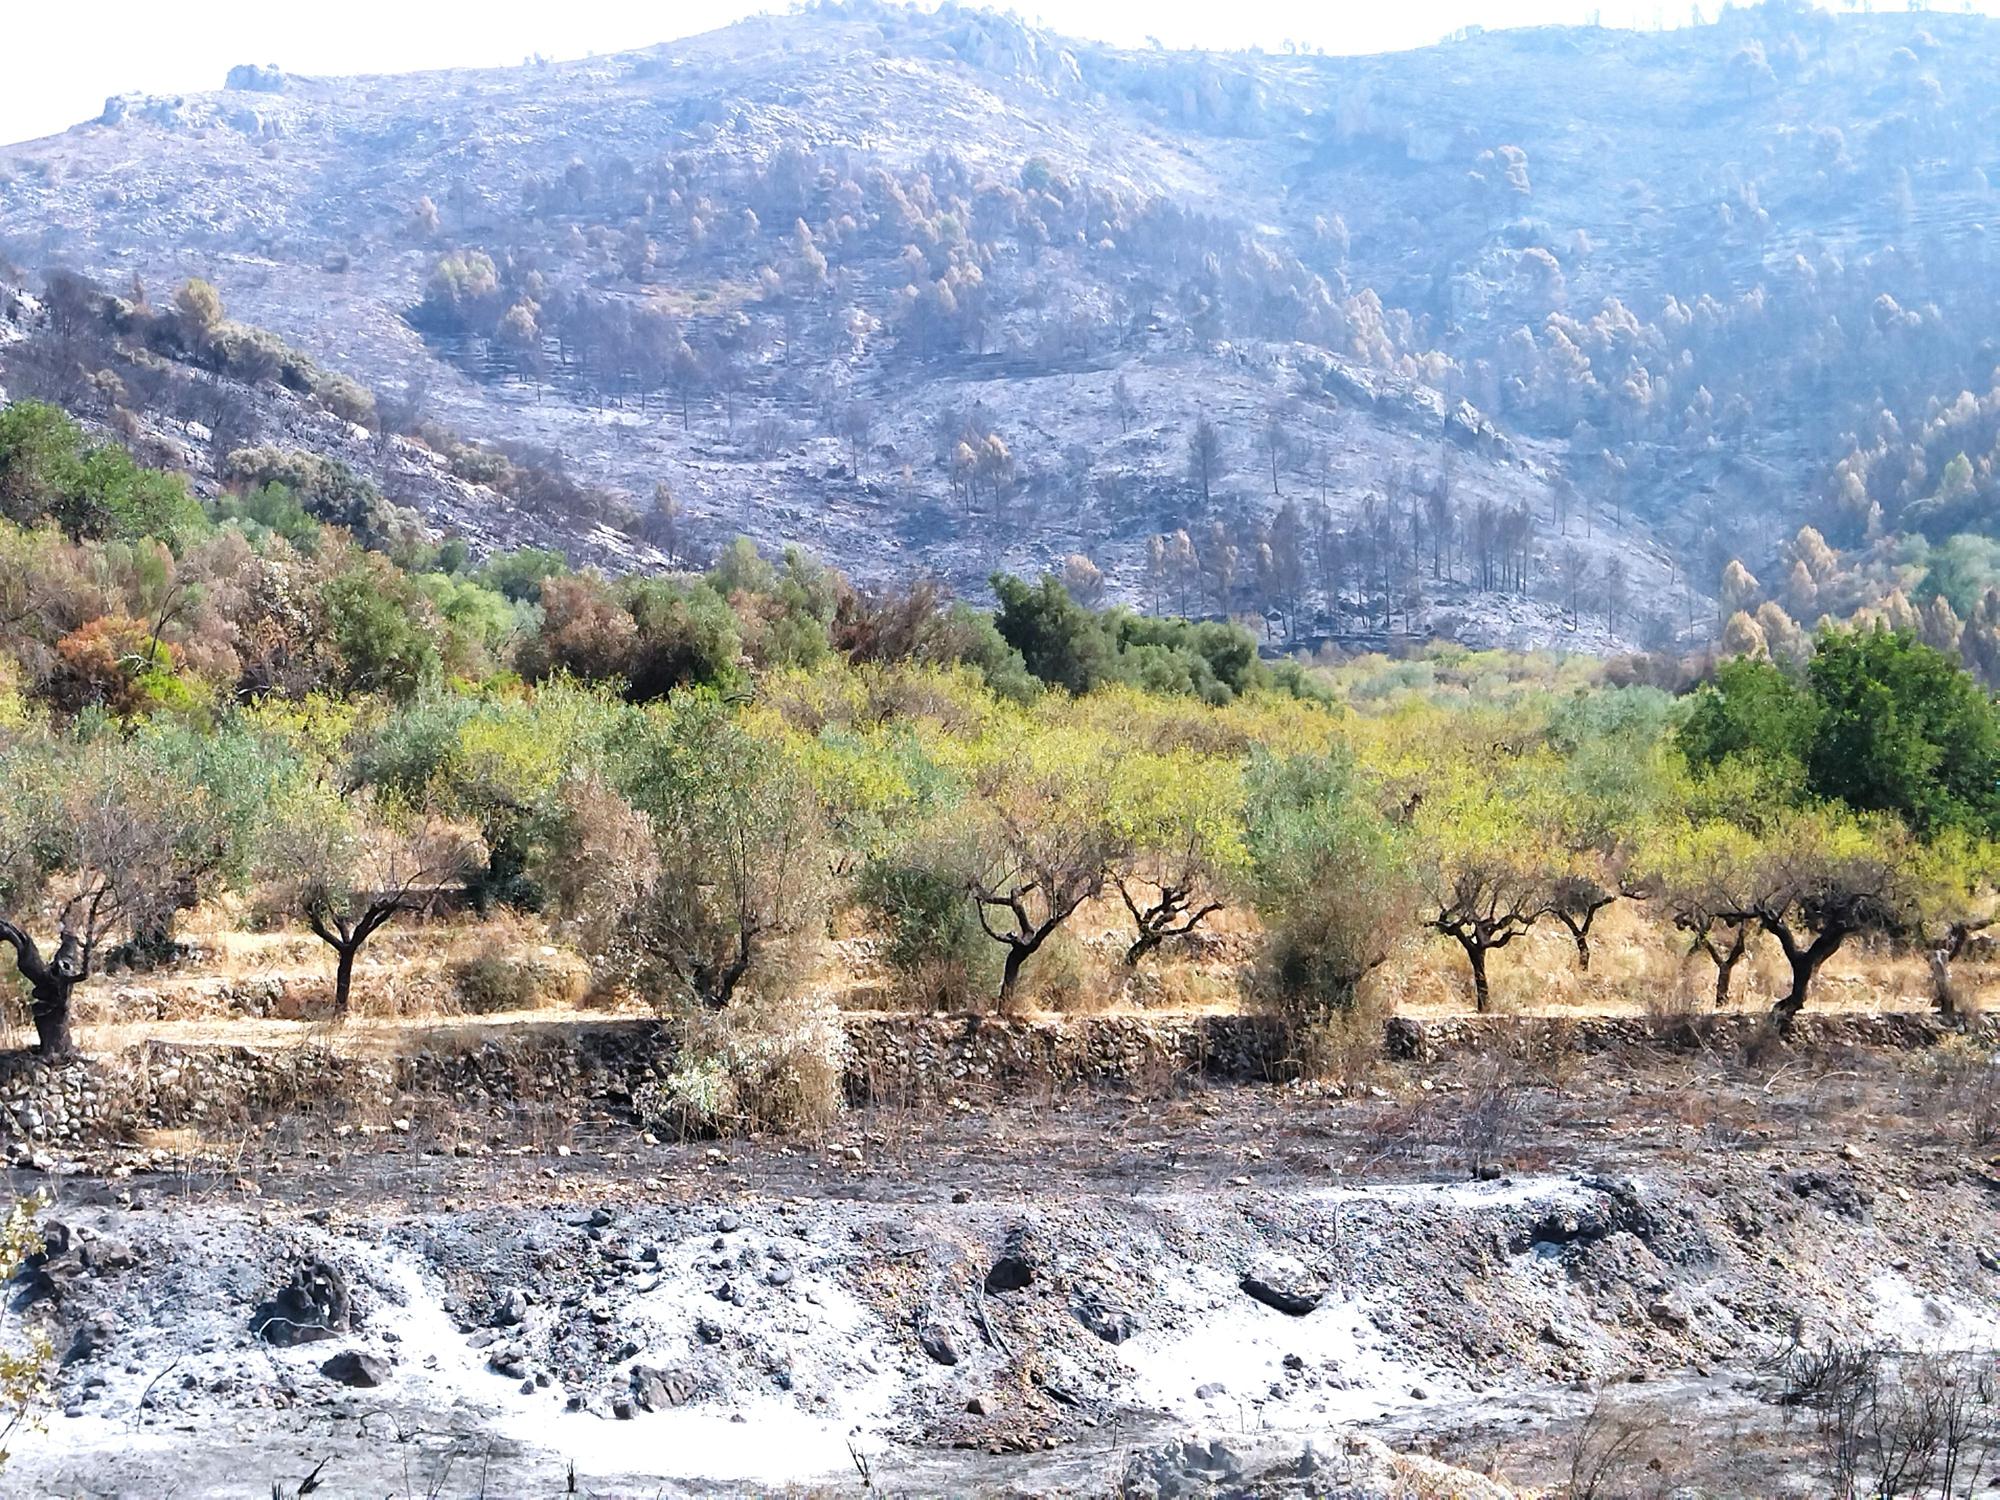 Cenizas por delante y devastación en la montaña y, en medio, un cultivo de olivos que conserva la vida y el verdor